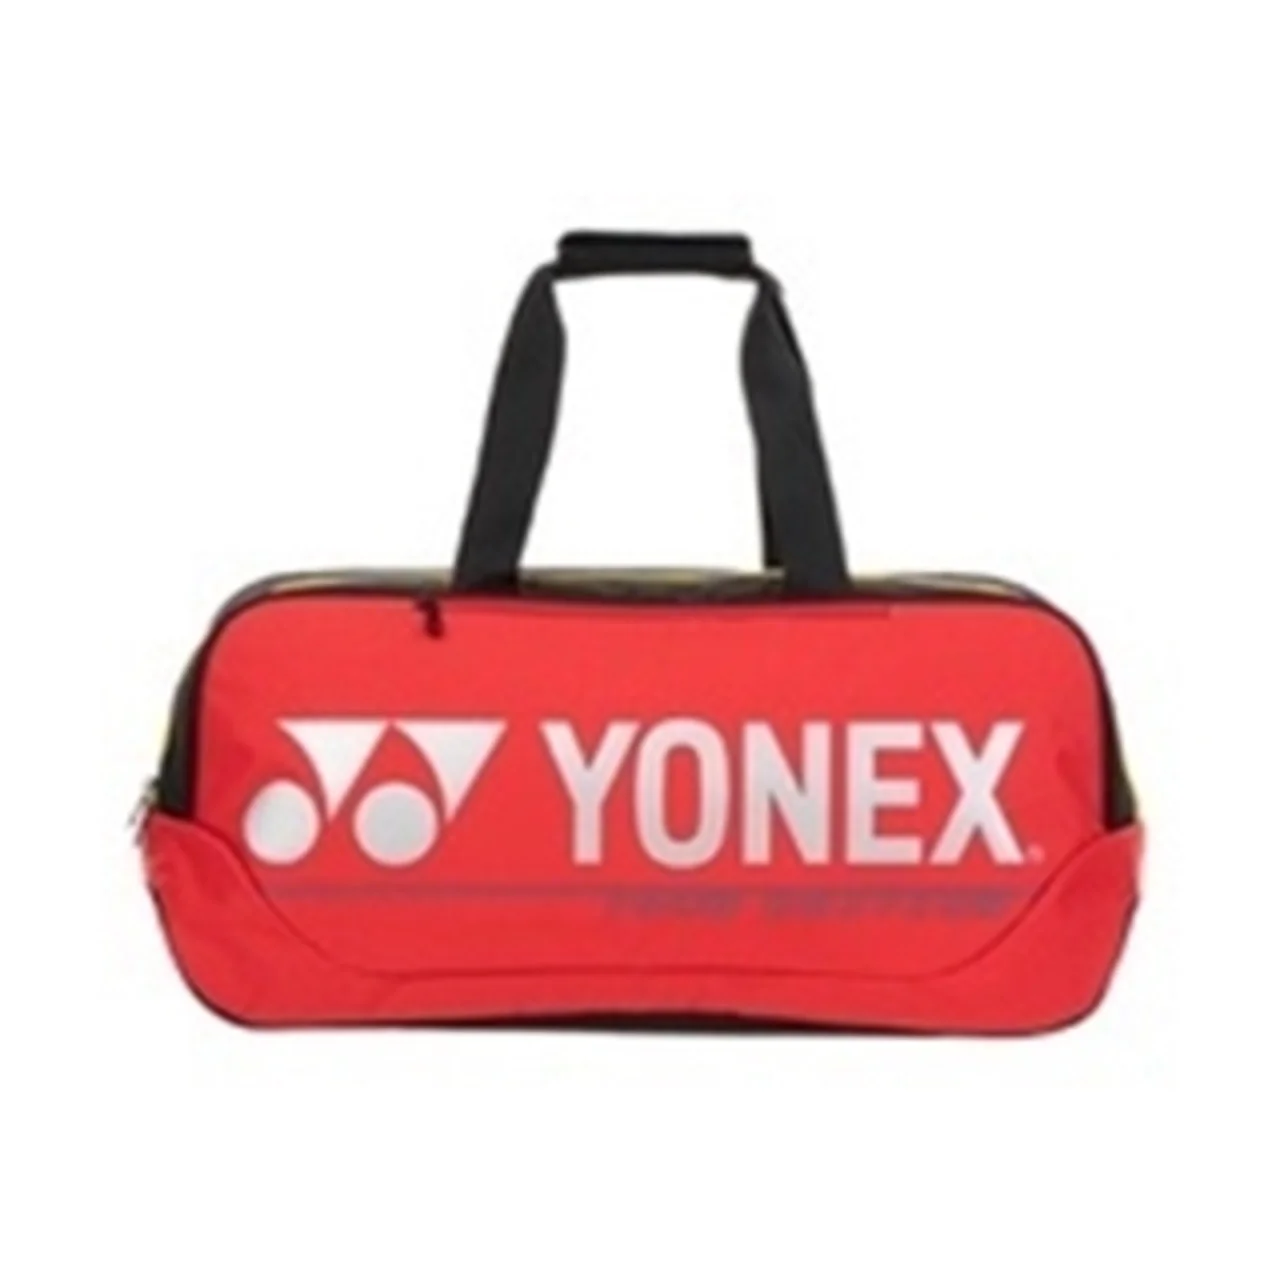 Yonex Pro Tournament Red